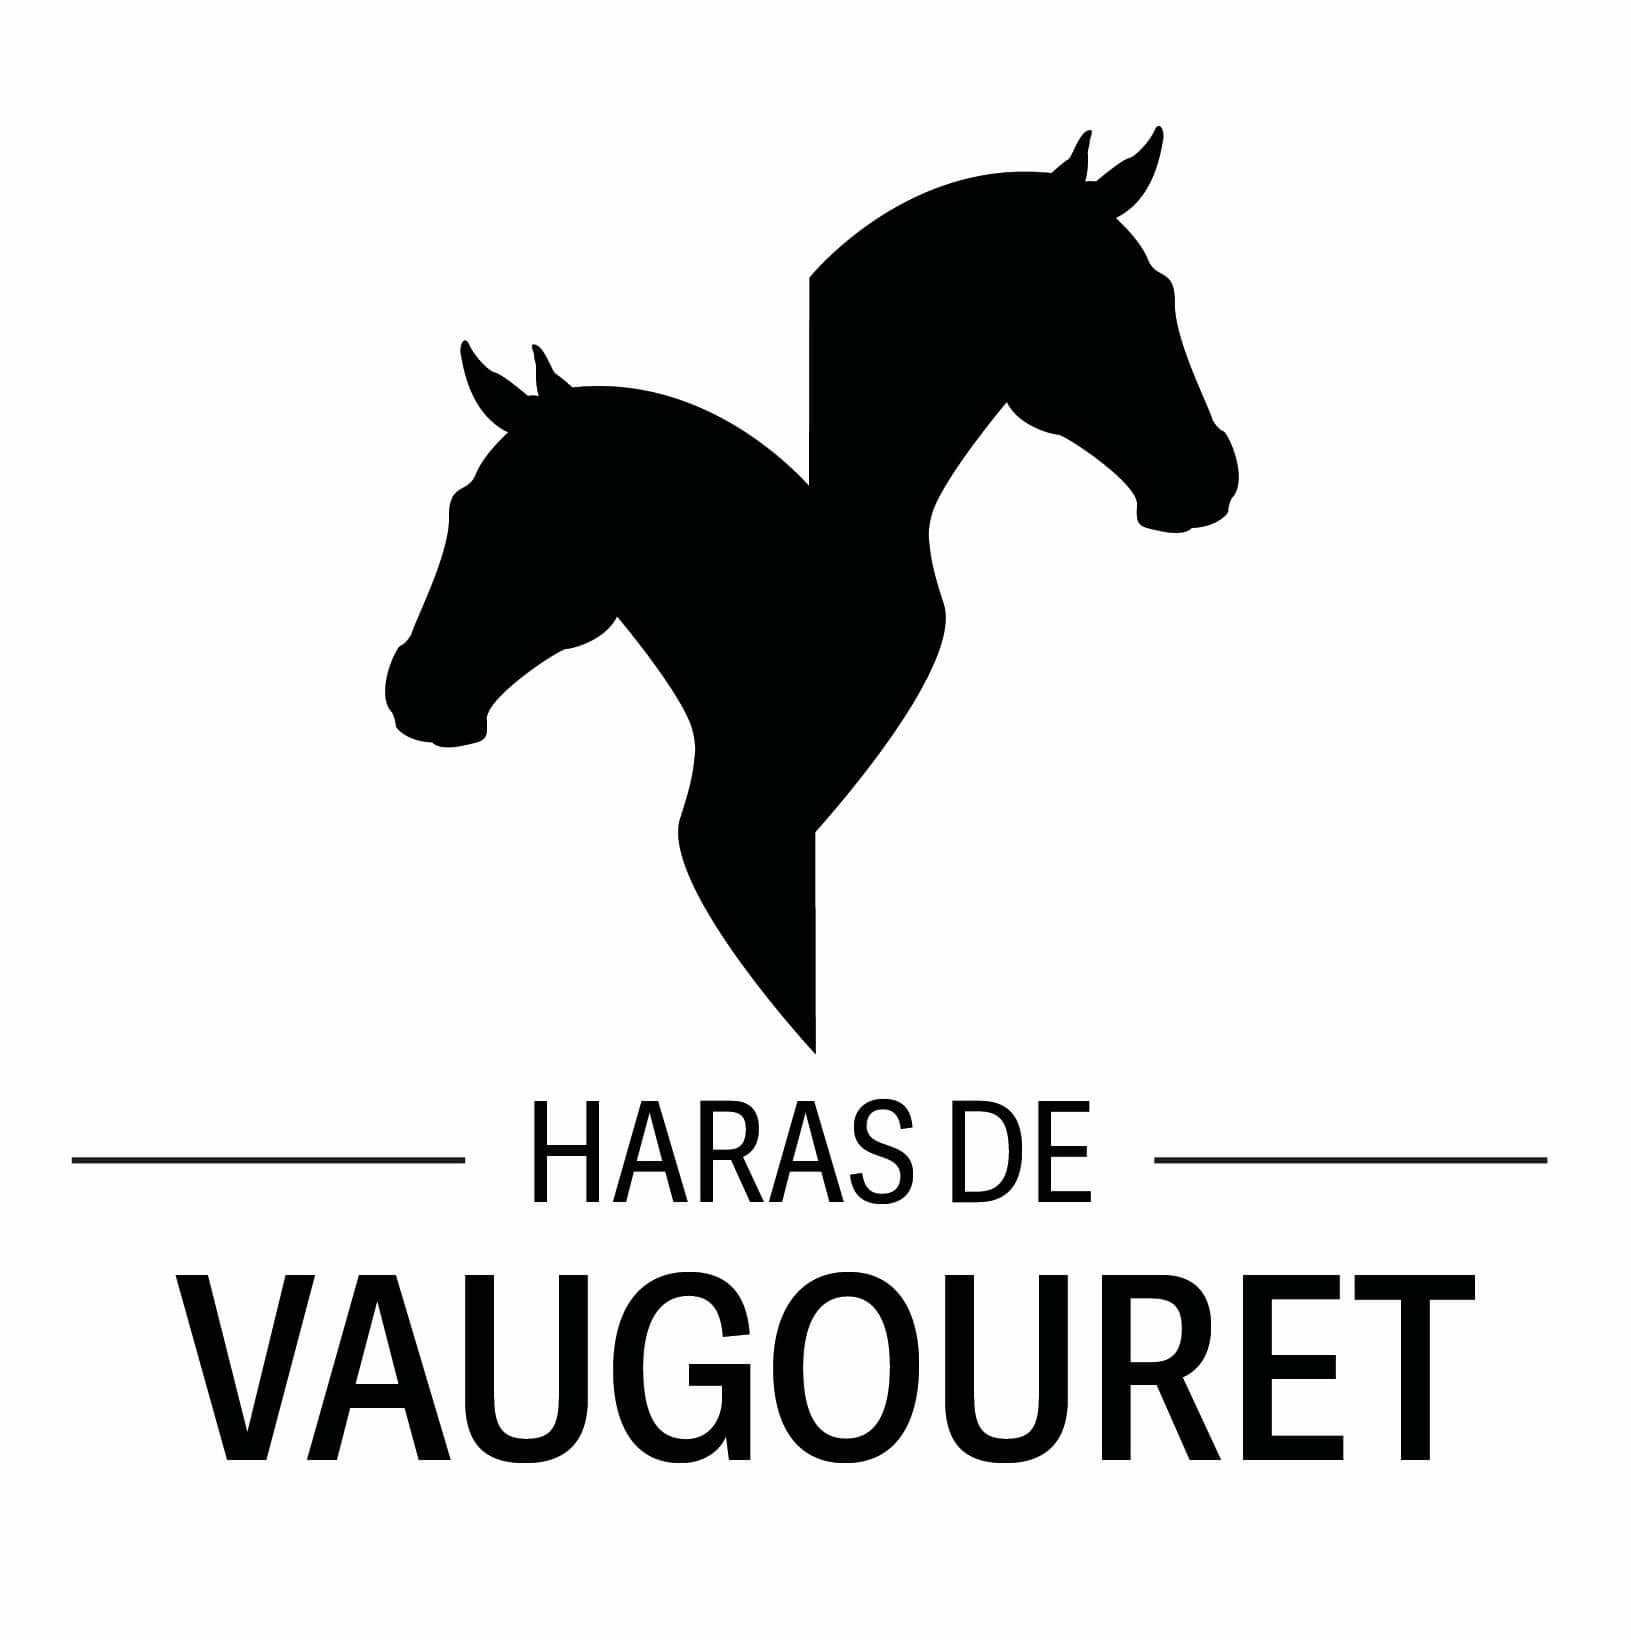 Haras de Vaugouret - Logo